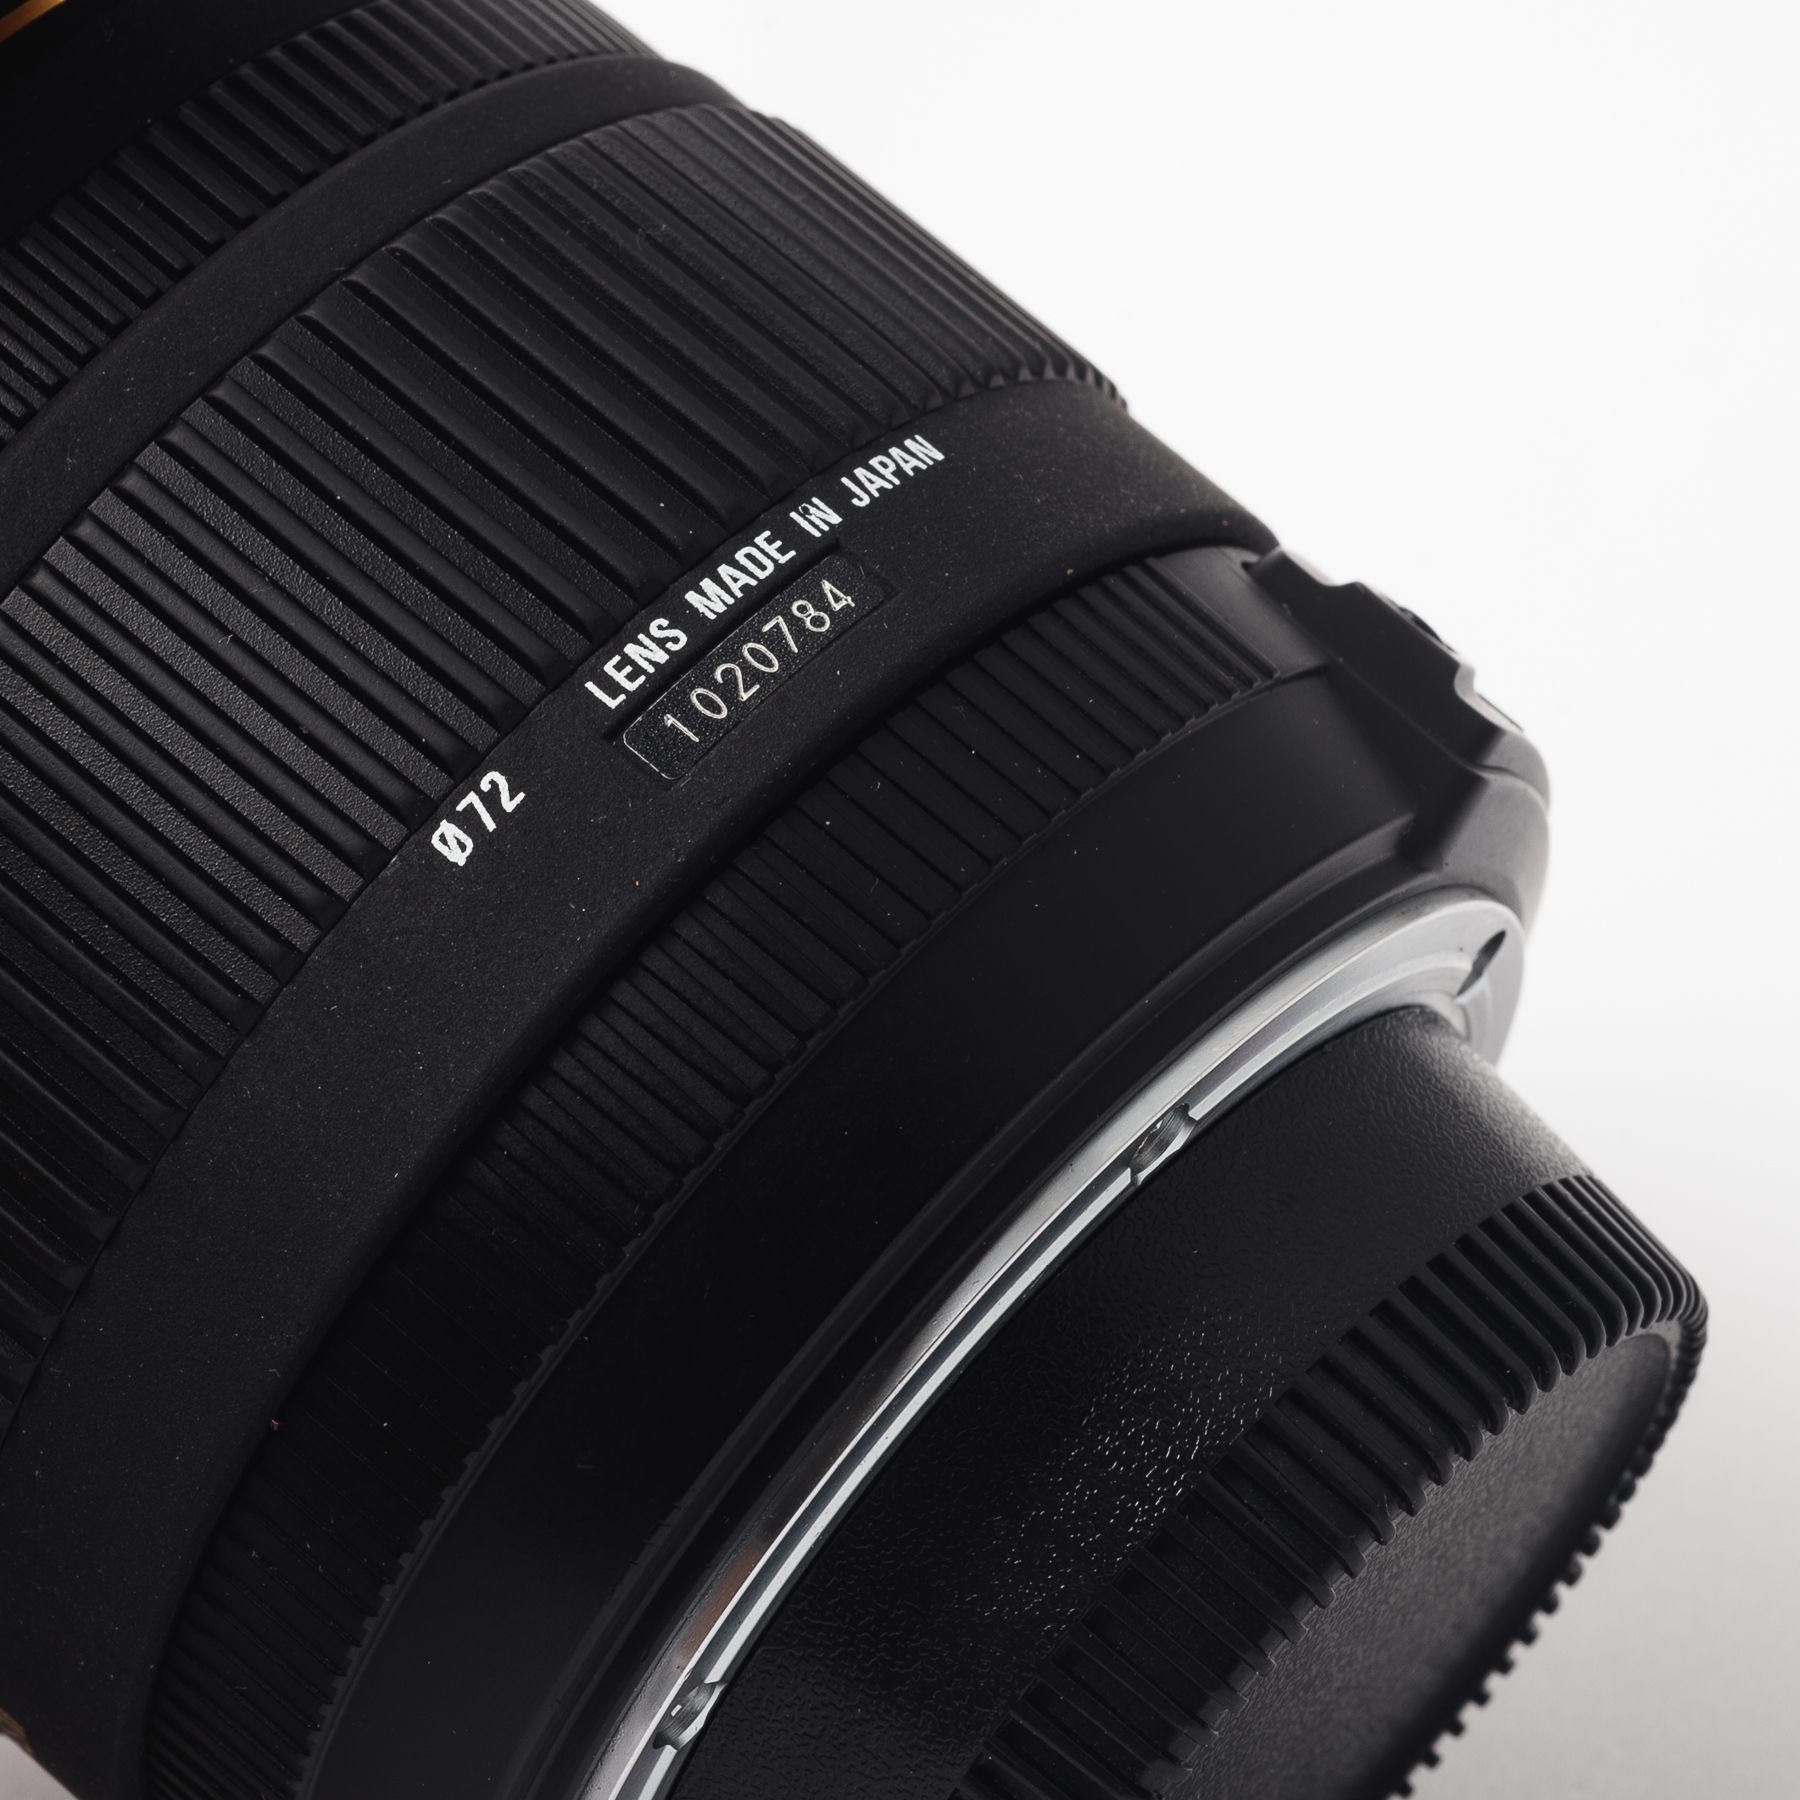 Об'єктив Sigma AF 18-50mm f/2.8 EX DC HSM для Nikon